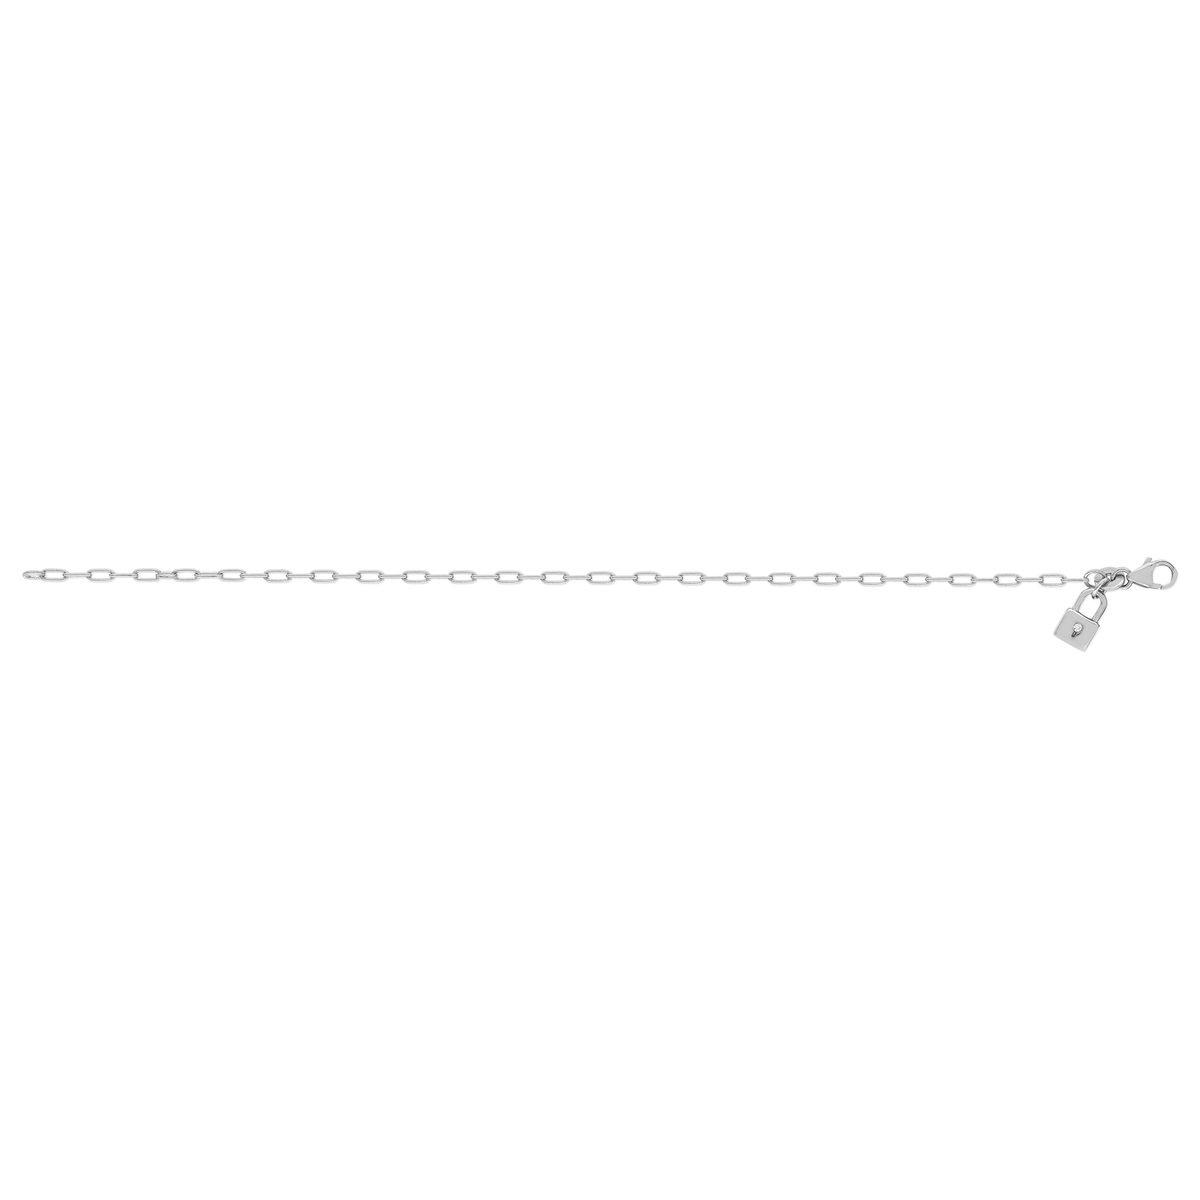 Bracelet argent 925, motif cadenas zirconia 18 cm - vue 2